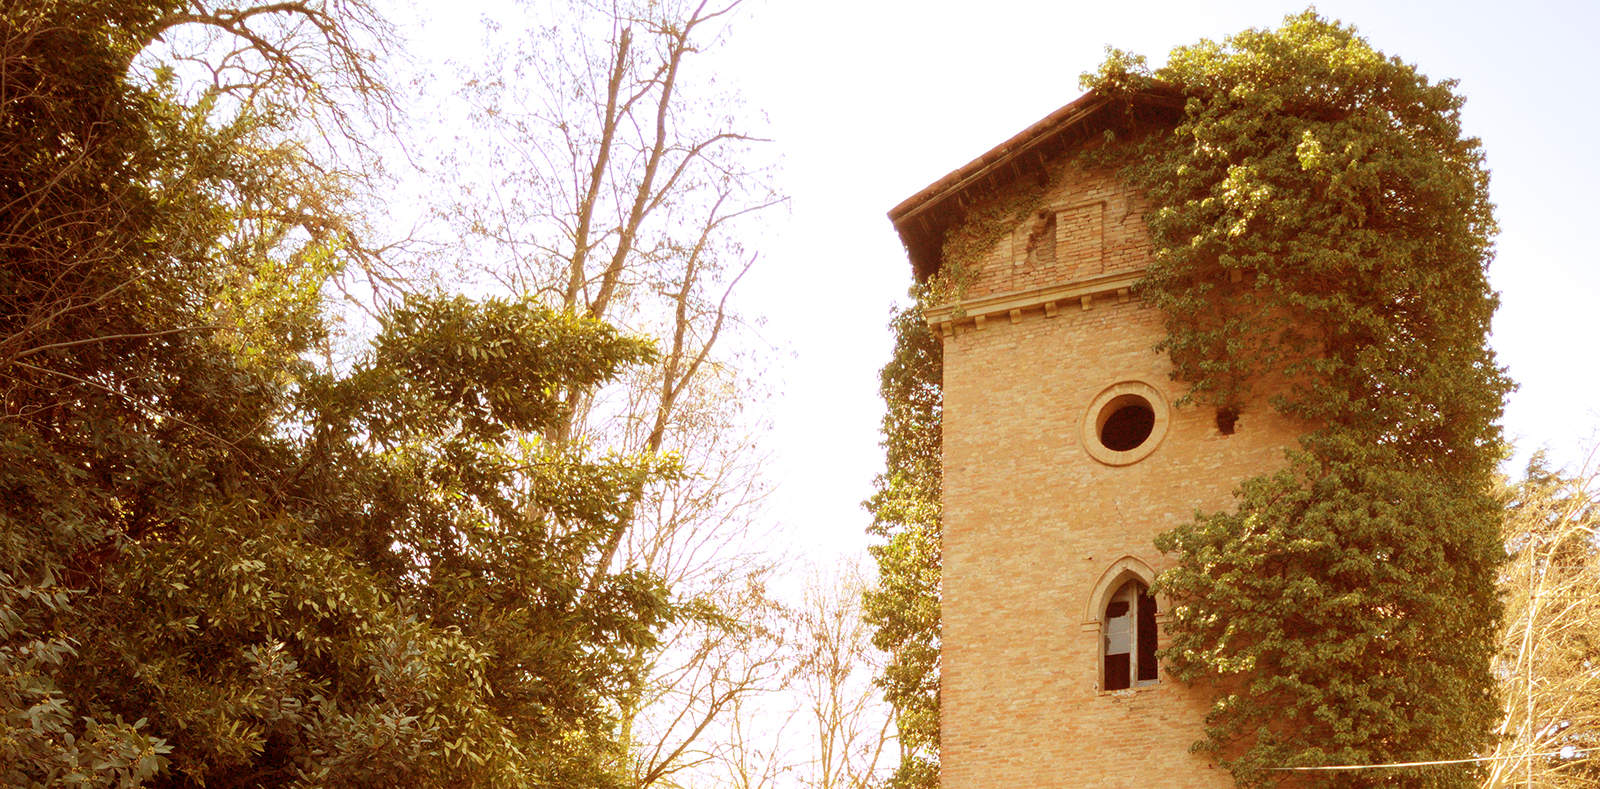 Il «brutto tetto a due acque» della torre cosiddetta di Ugo Bassi nel parco di Villa Spada a Bologna